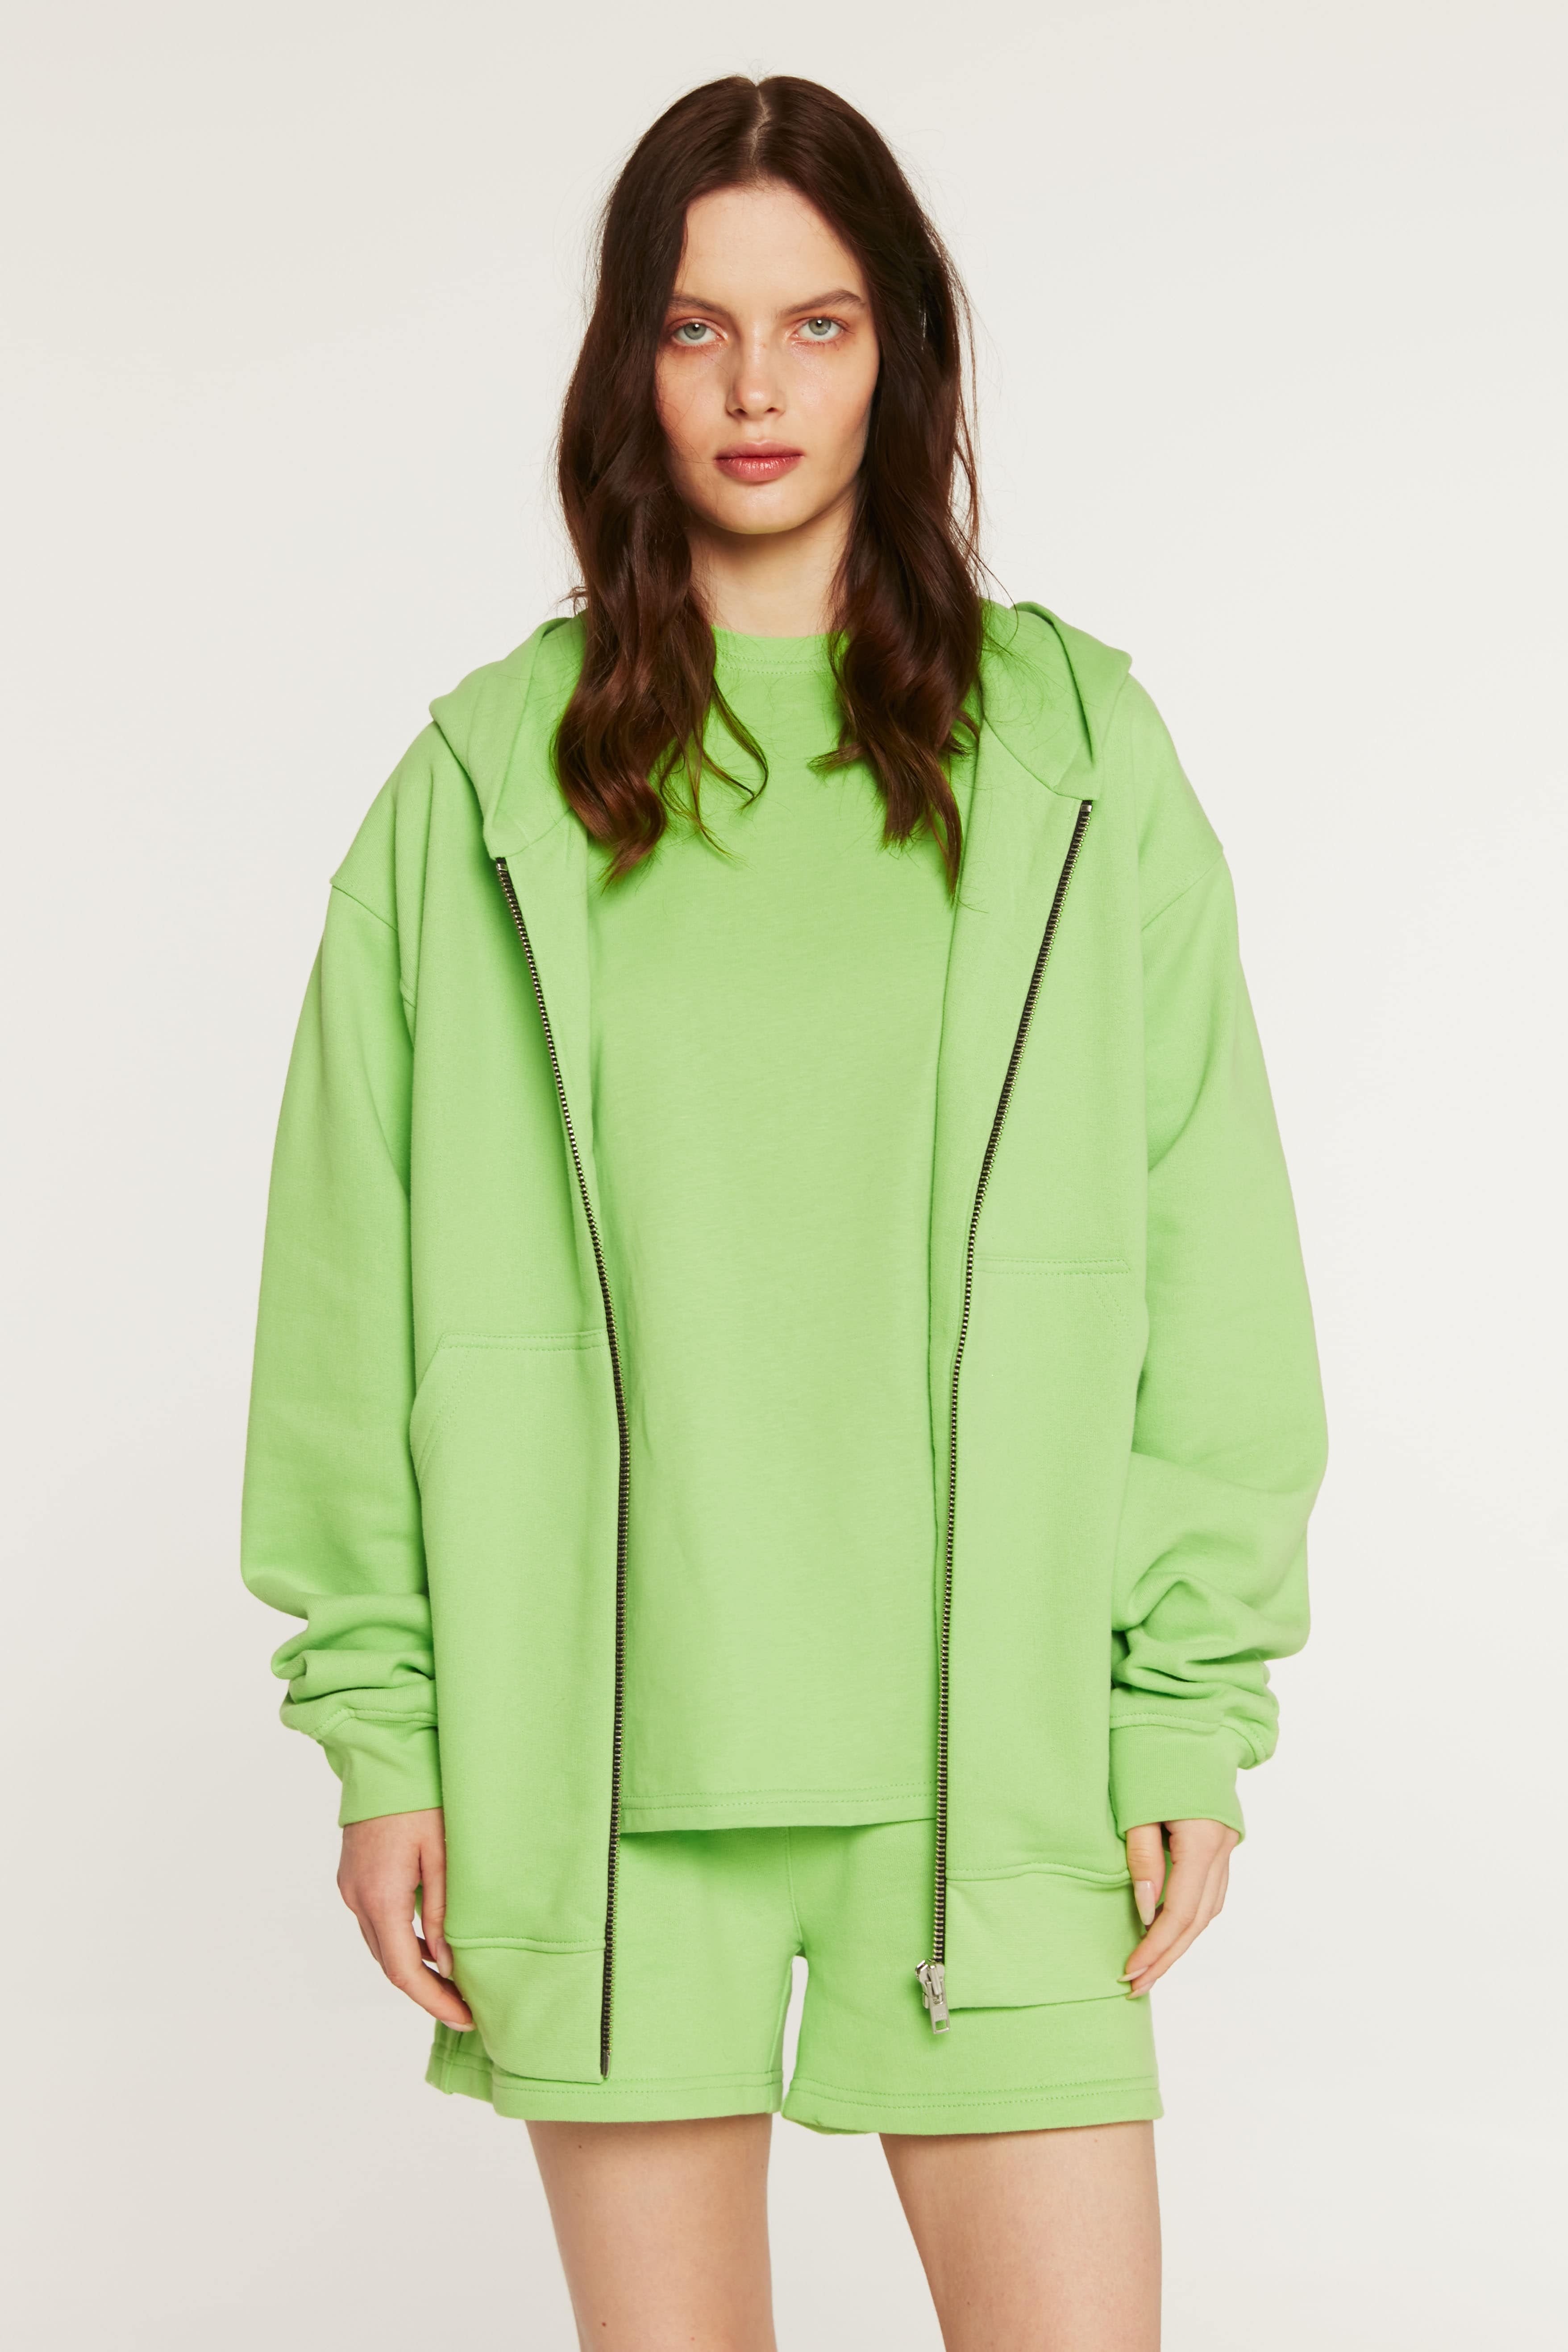 Zip-up hoodie in jasmine color